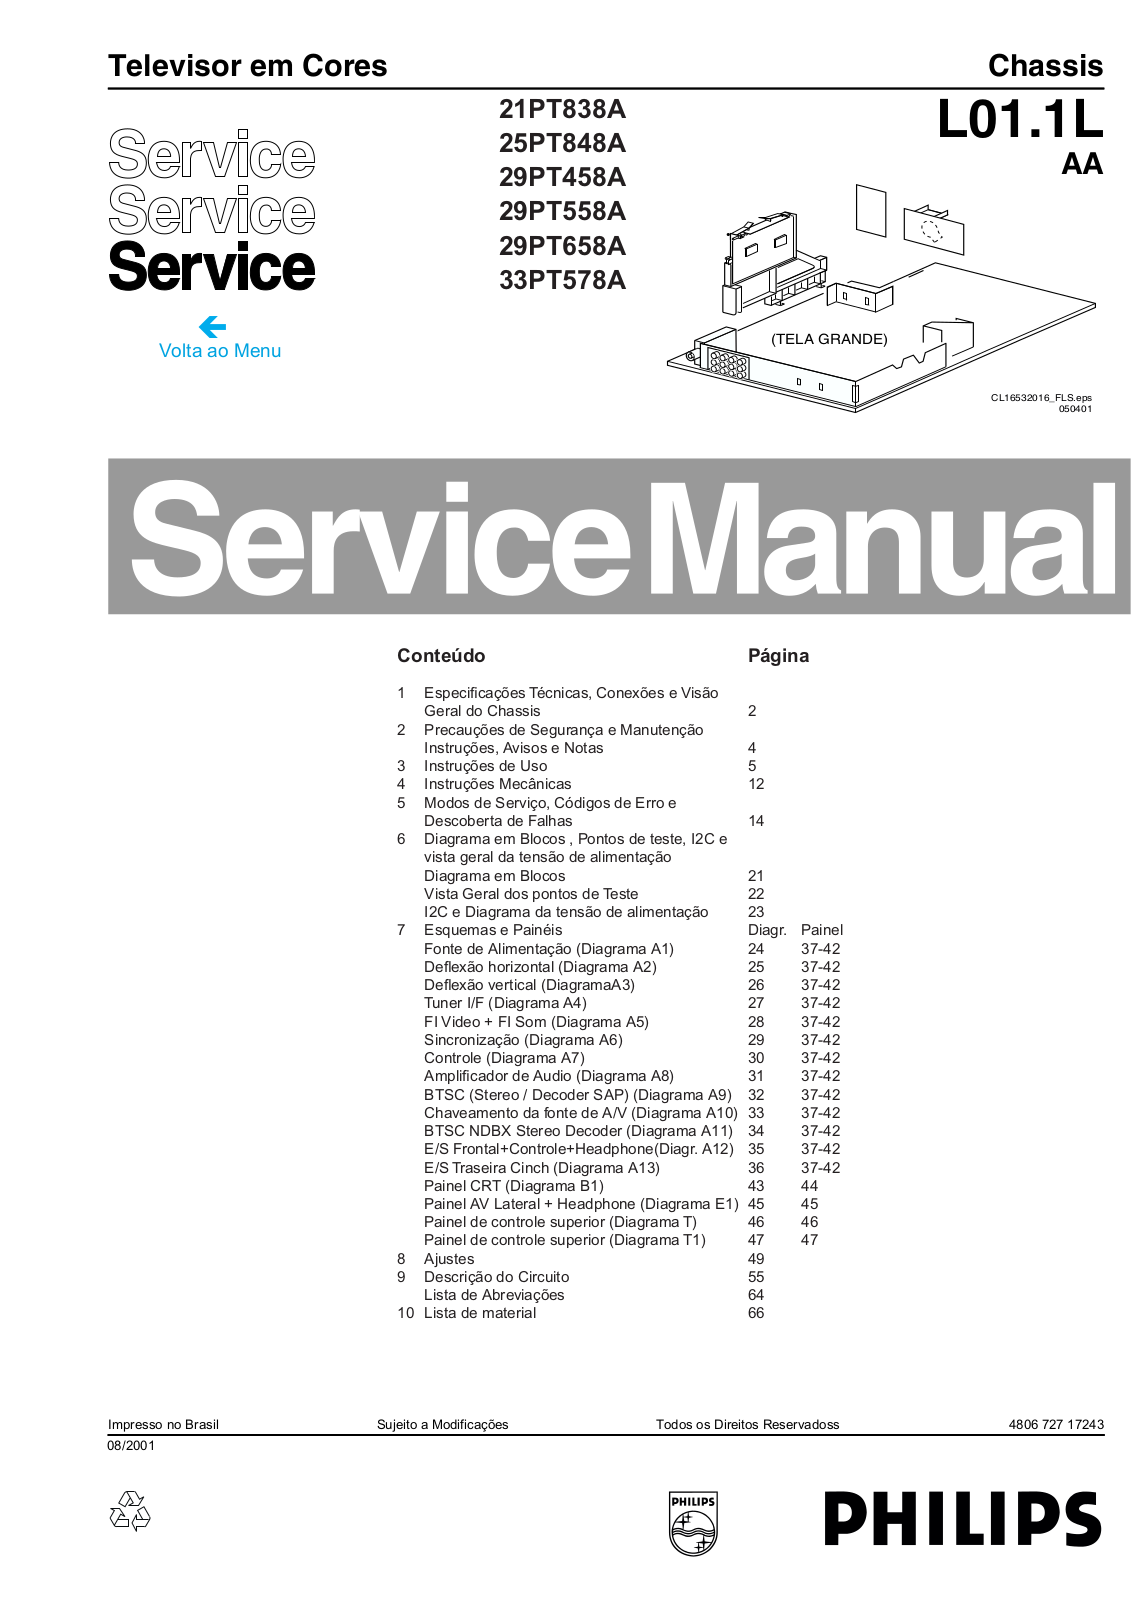 PHILIPS 29PT458A, 21PT838A, 25PT848A, 33PT578A, 29PT658A Service Manual